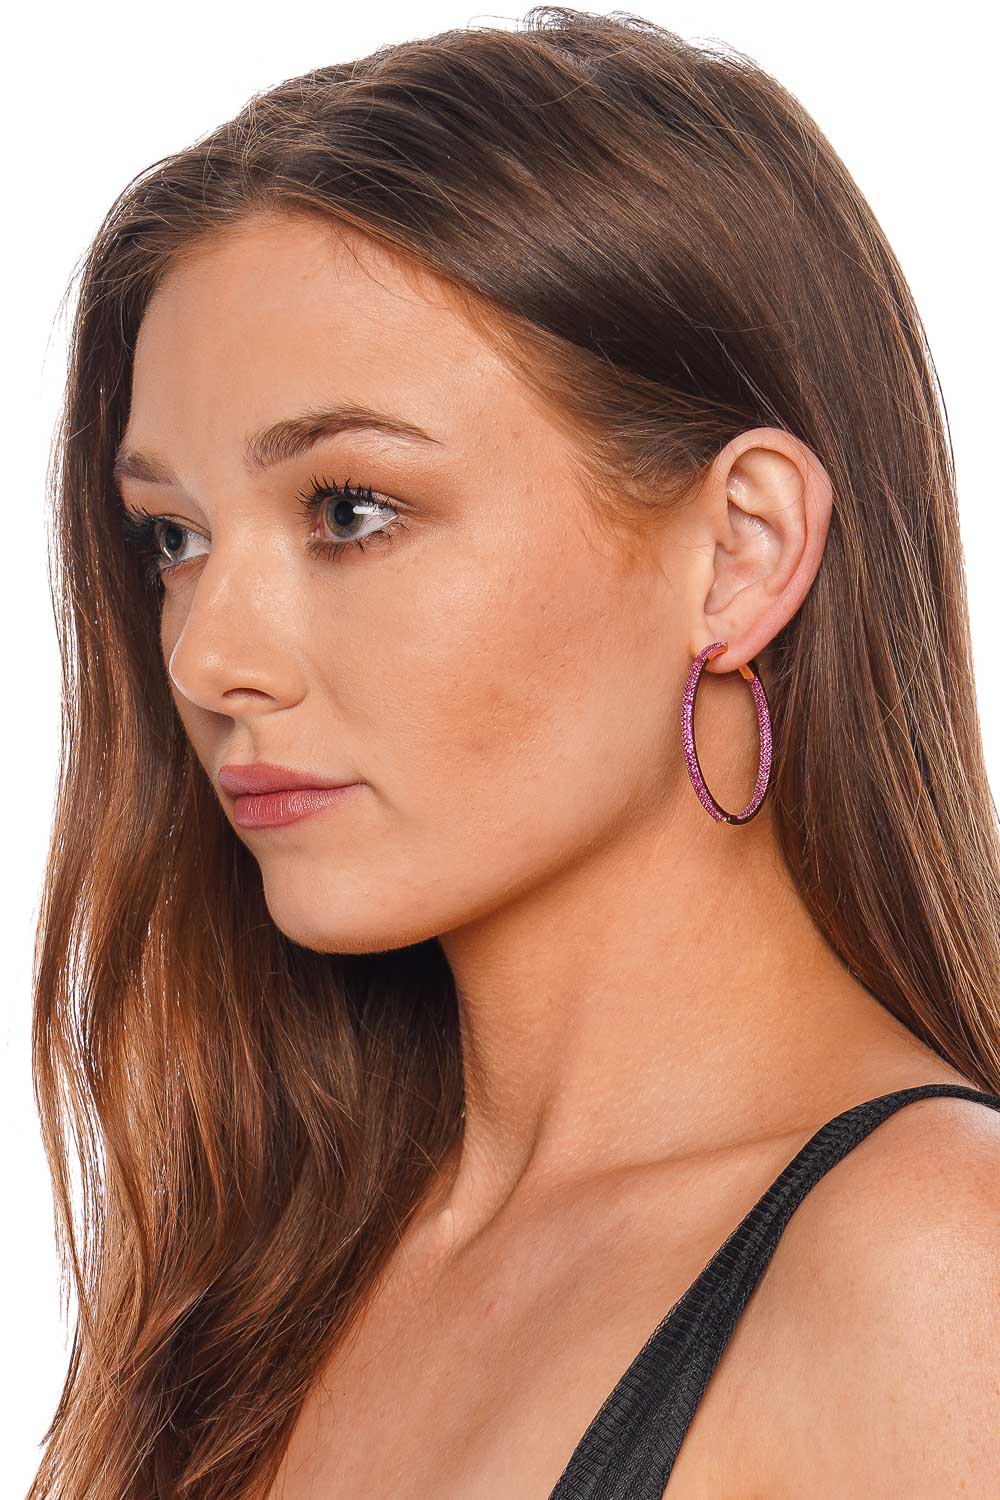 Nickho Rey Slim Tire Pink Crystal Hoop Earrings